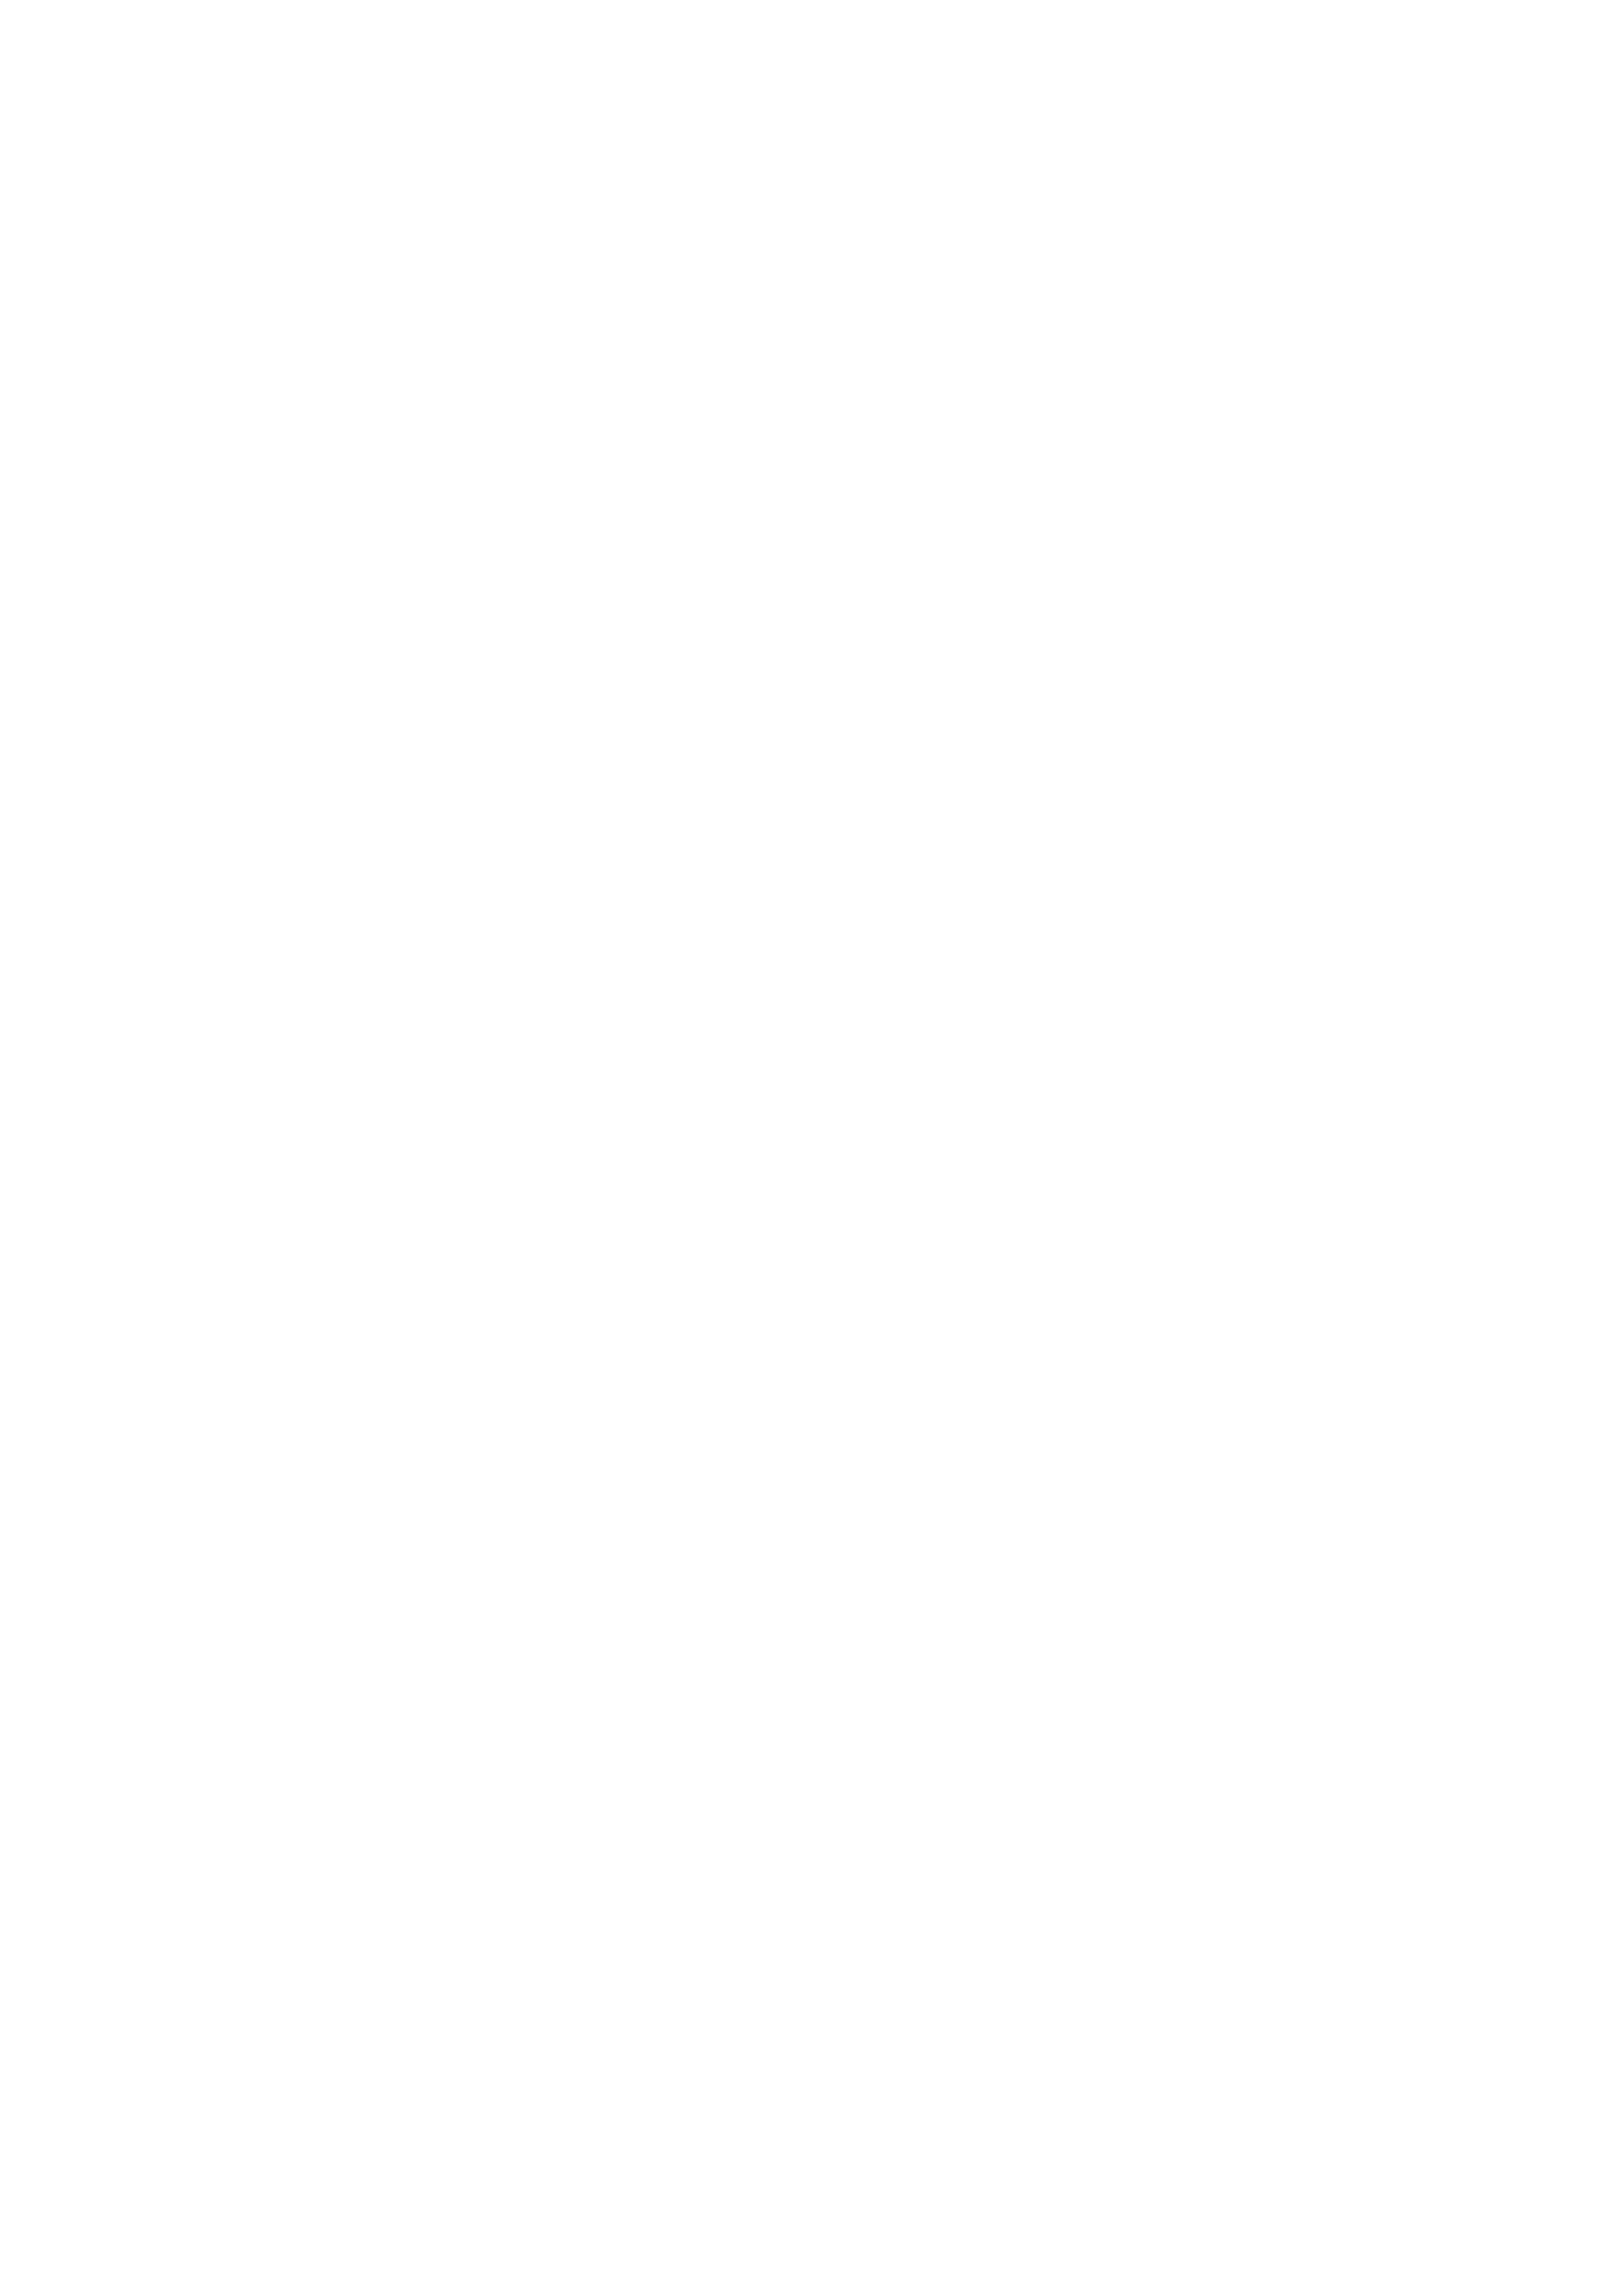 【マックス（モンモン）】徳房戦隊ディナレンジャーVol.17 / 18【英語】【サハ】【デジタル】